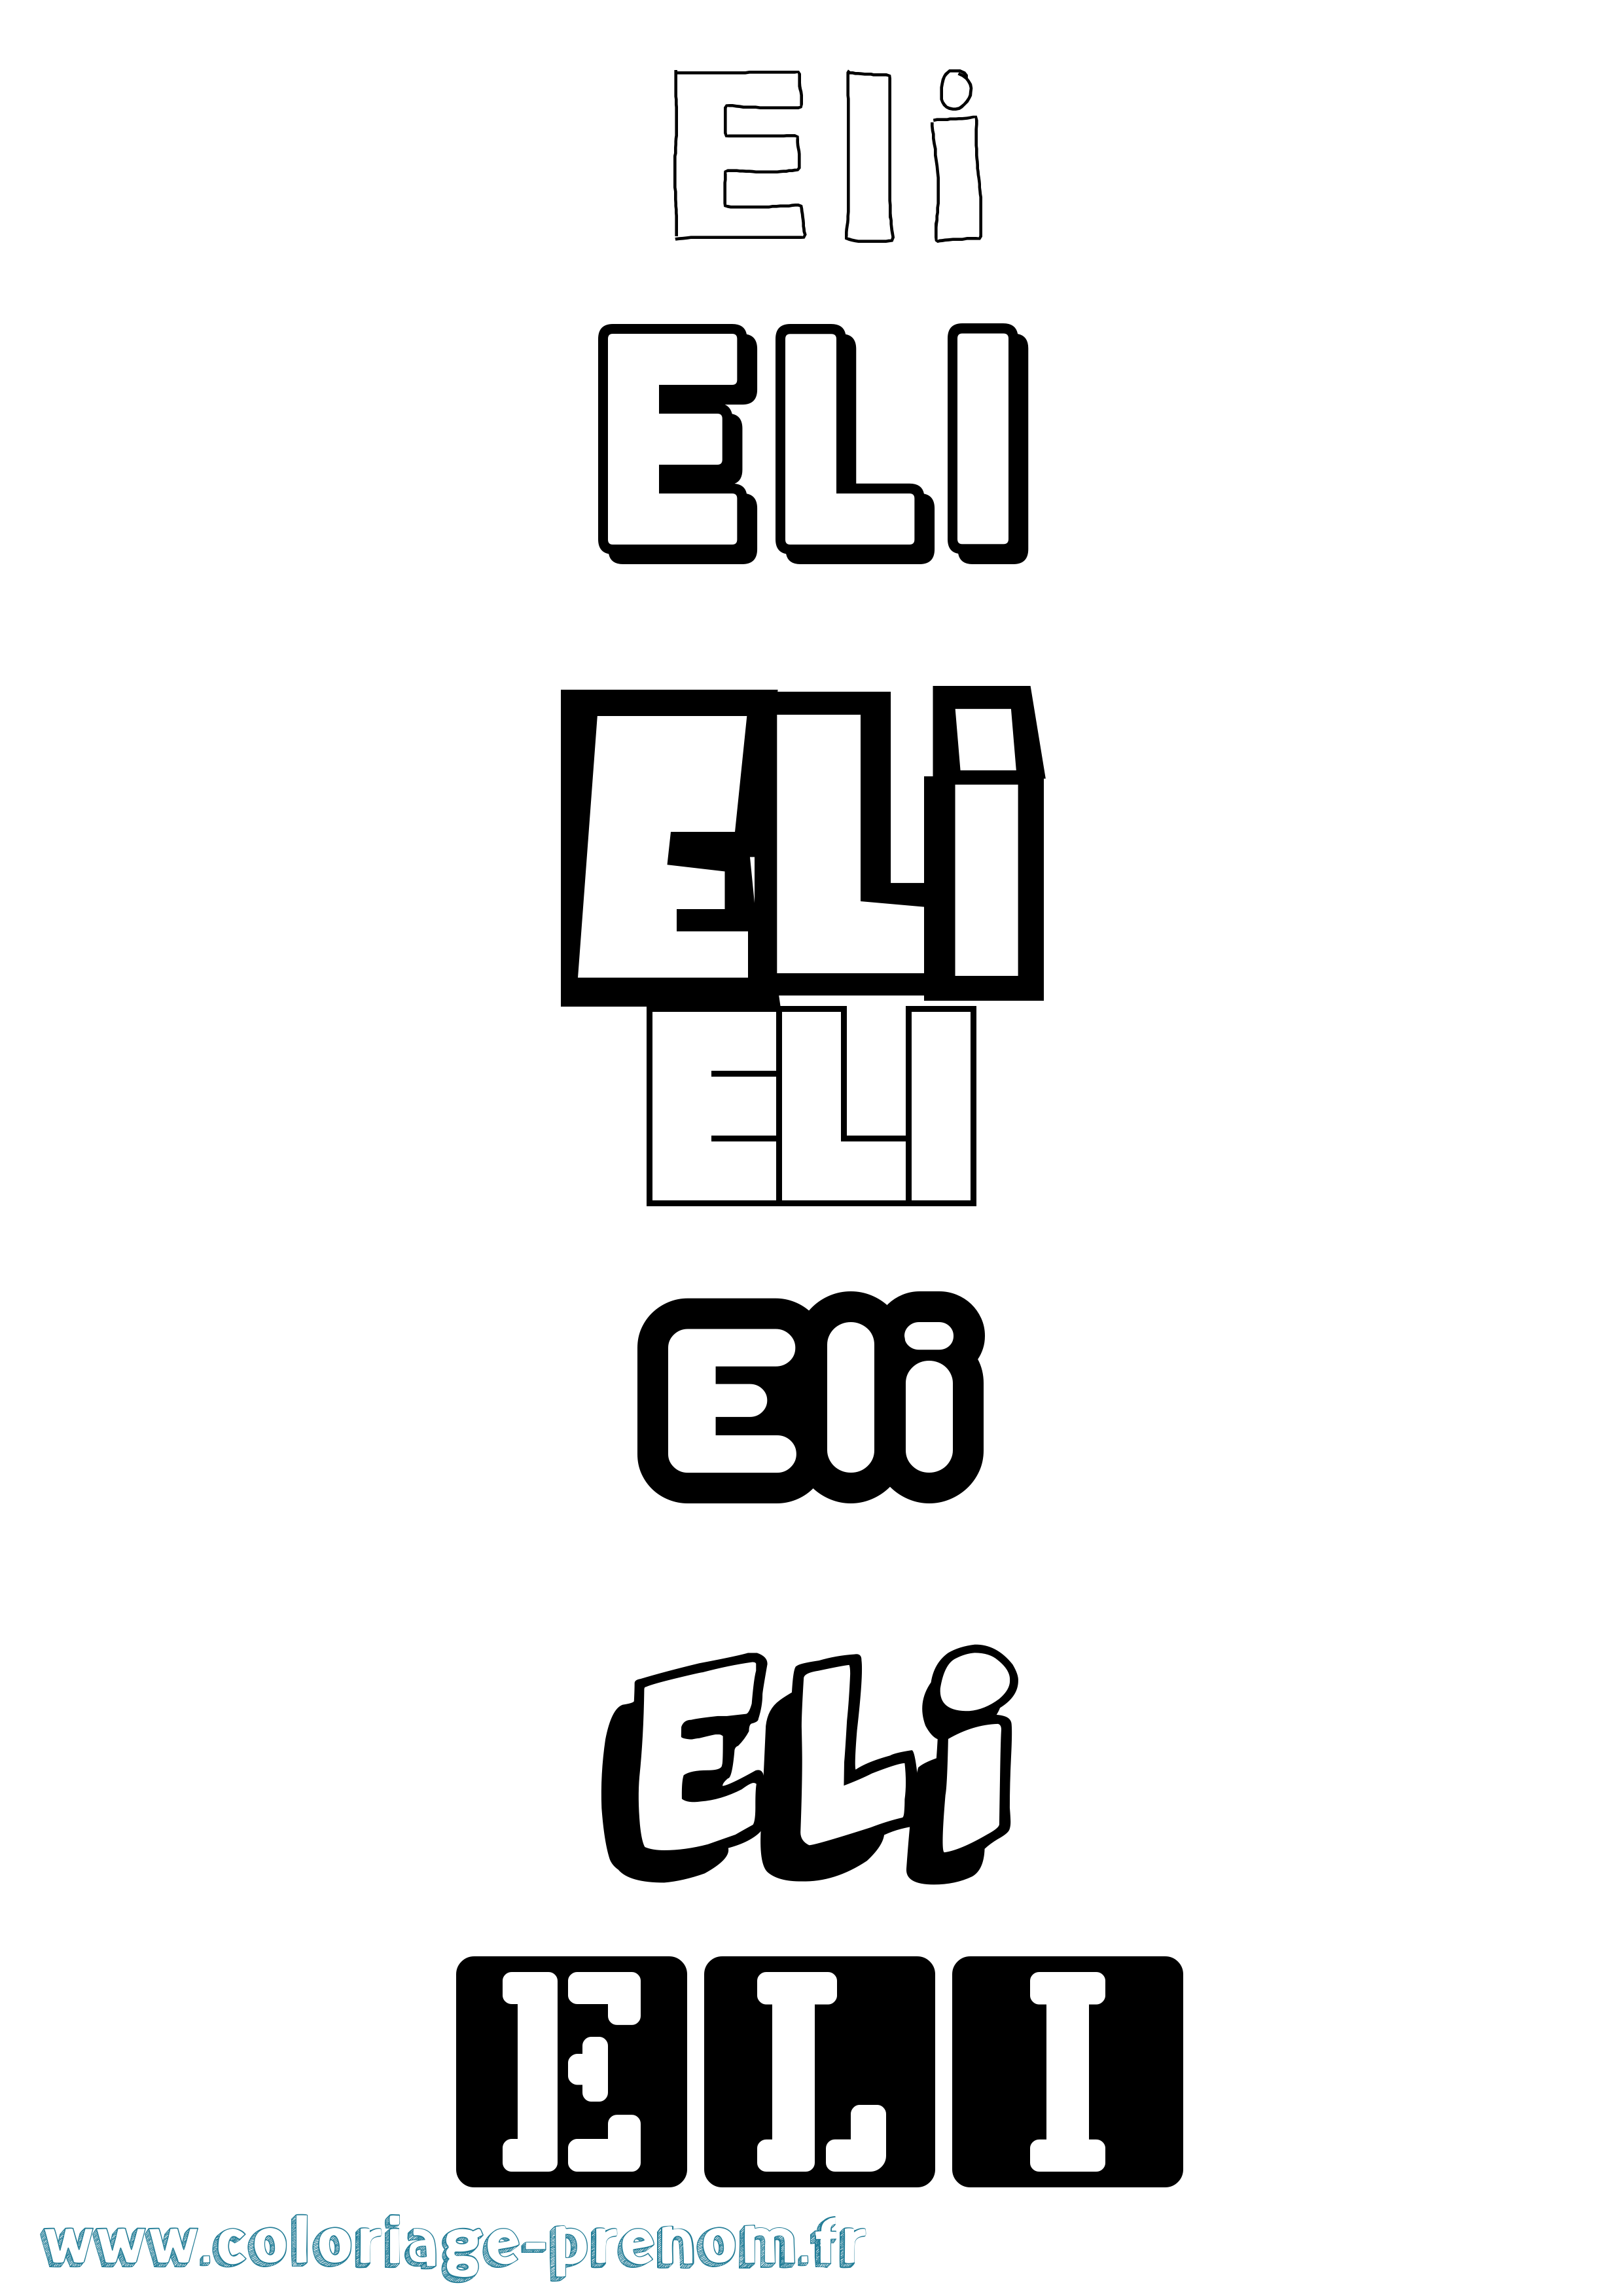 Coloriage prénom Eli Simple